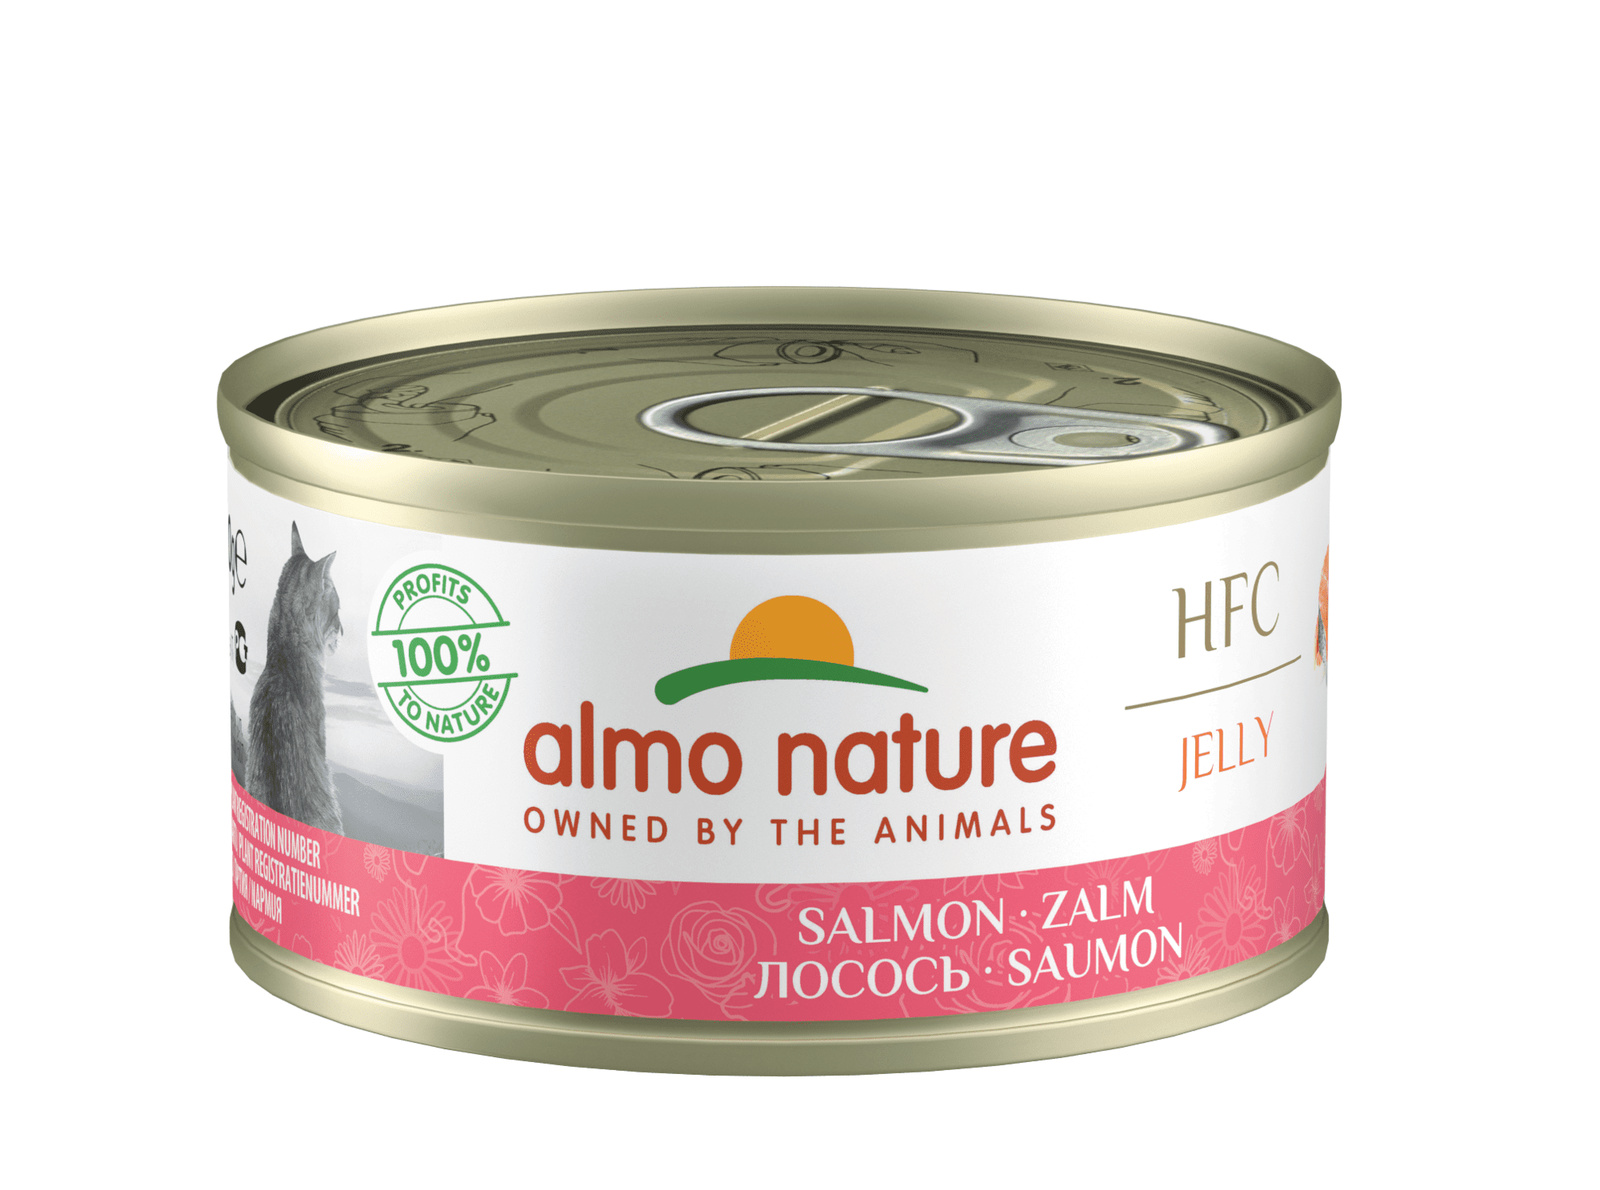 консервы для кошек almo nature classic с лососем и тыквой 55 г Almo Nature консервы Almo Nature консервы с лососем желе для кошек (70 г)